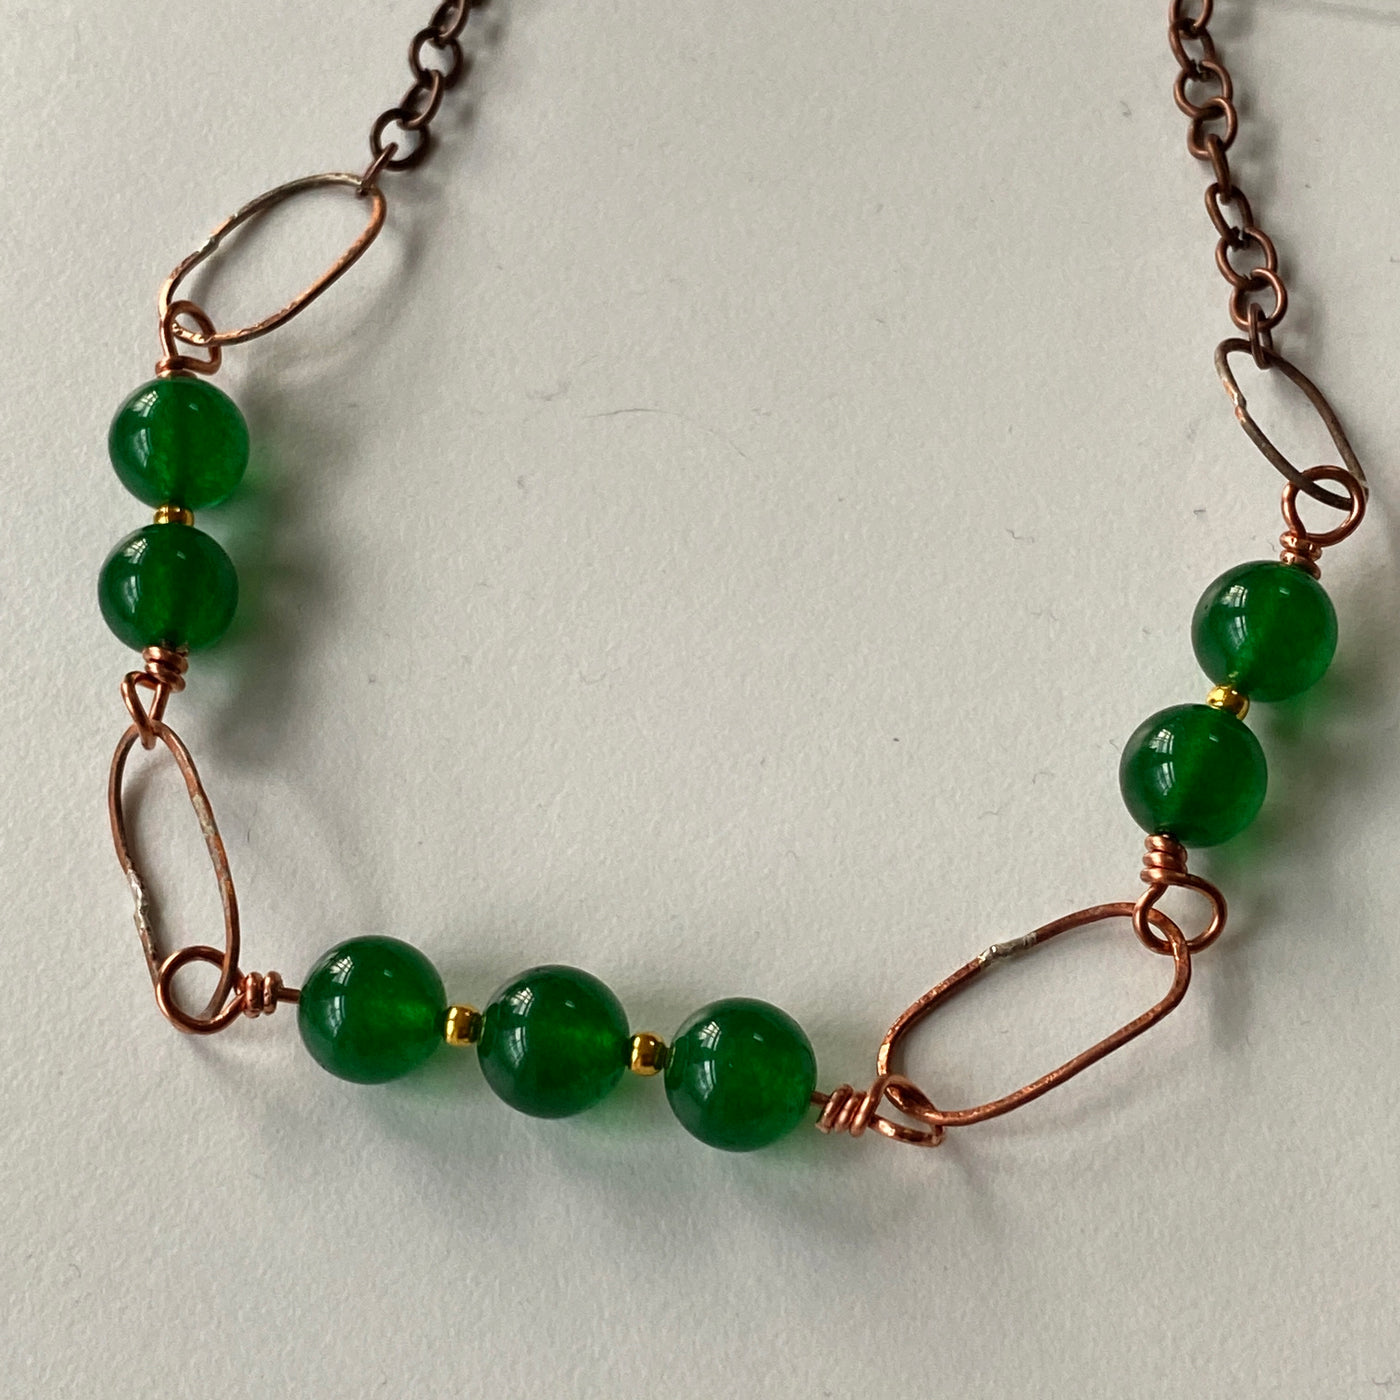 Halskette aus grünem Calcedon und Draht an einer Kette. Liniensammlung.